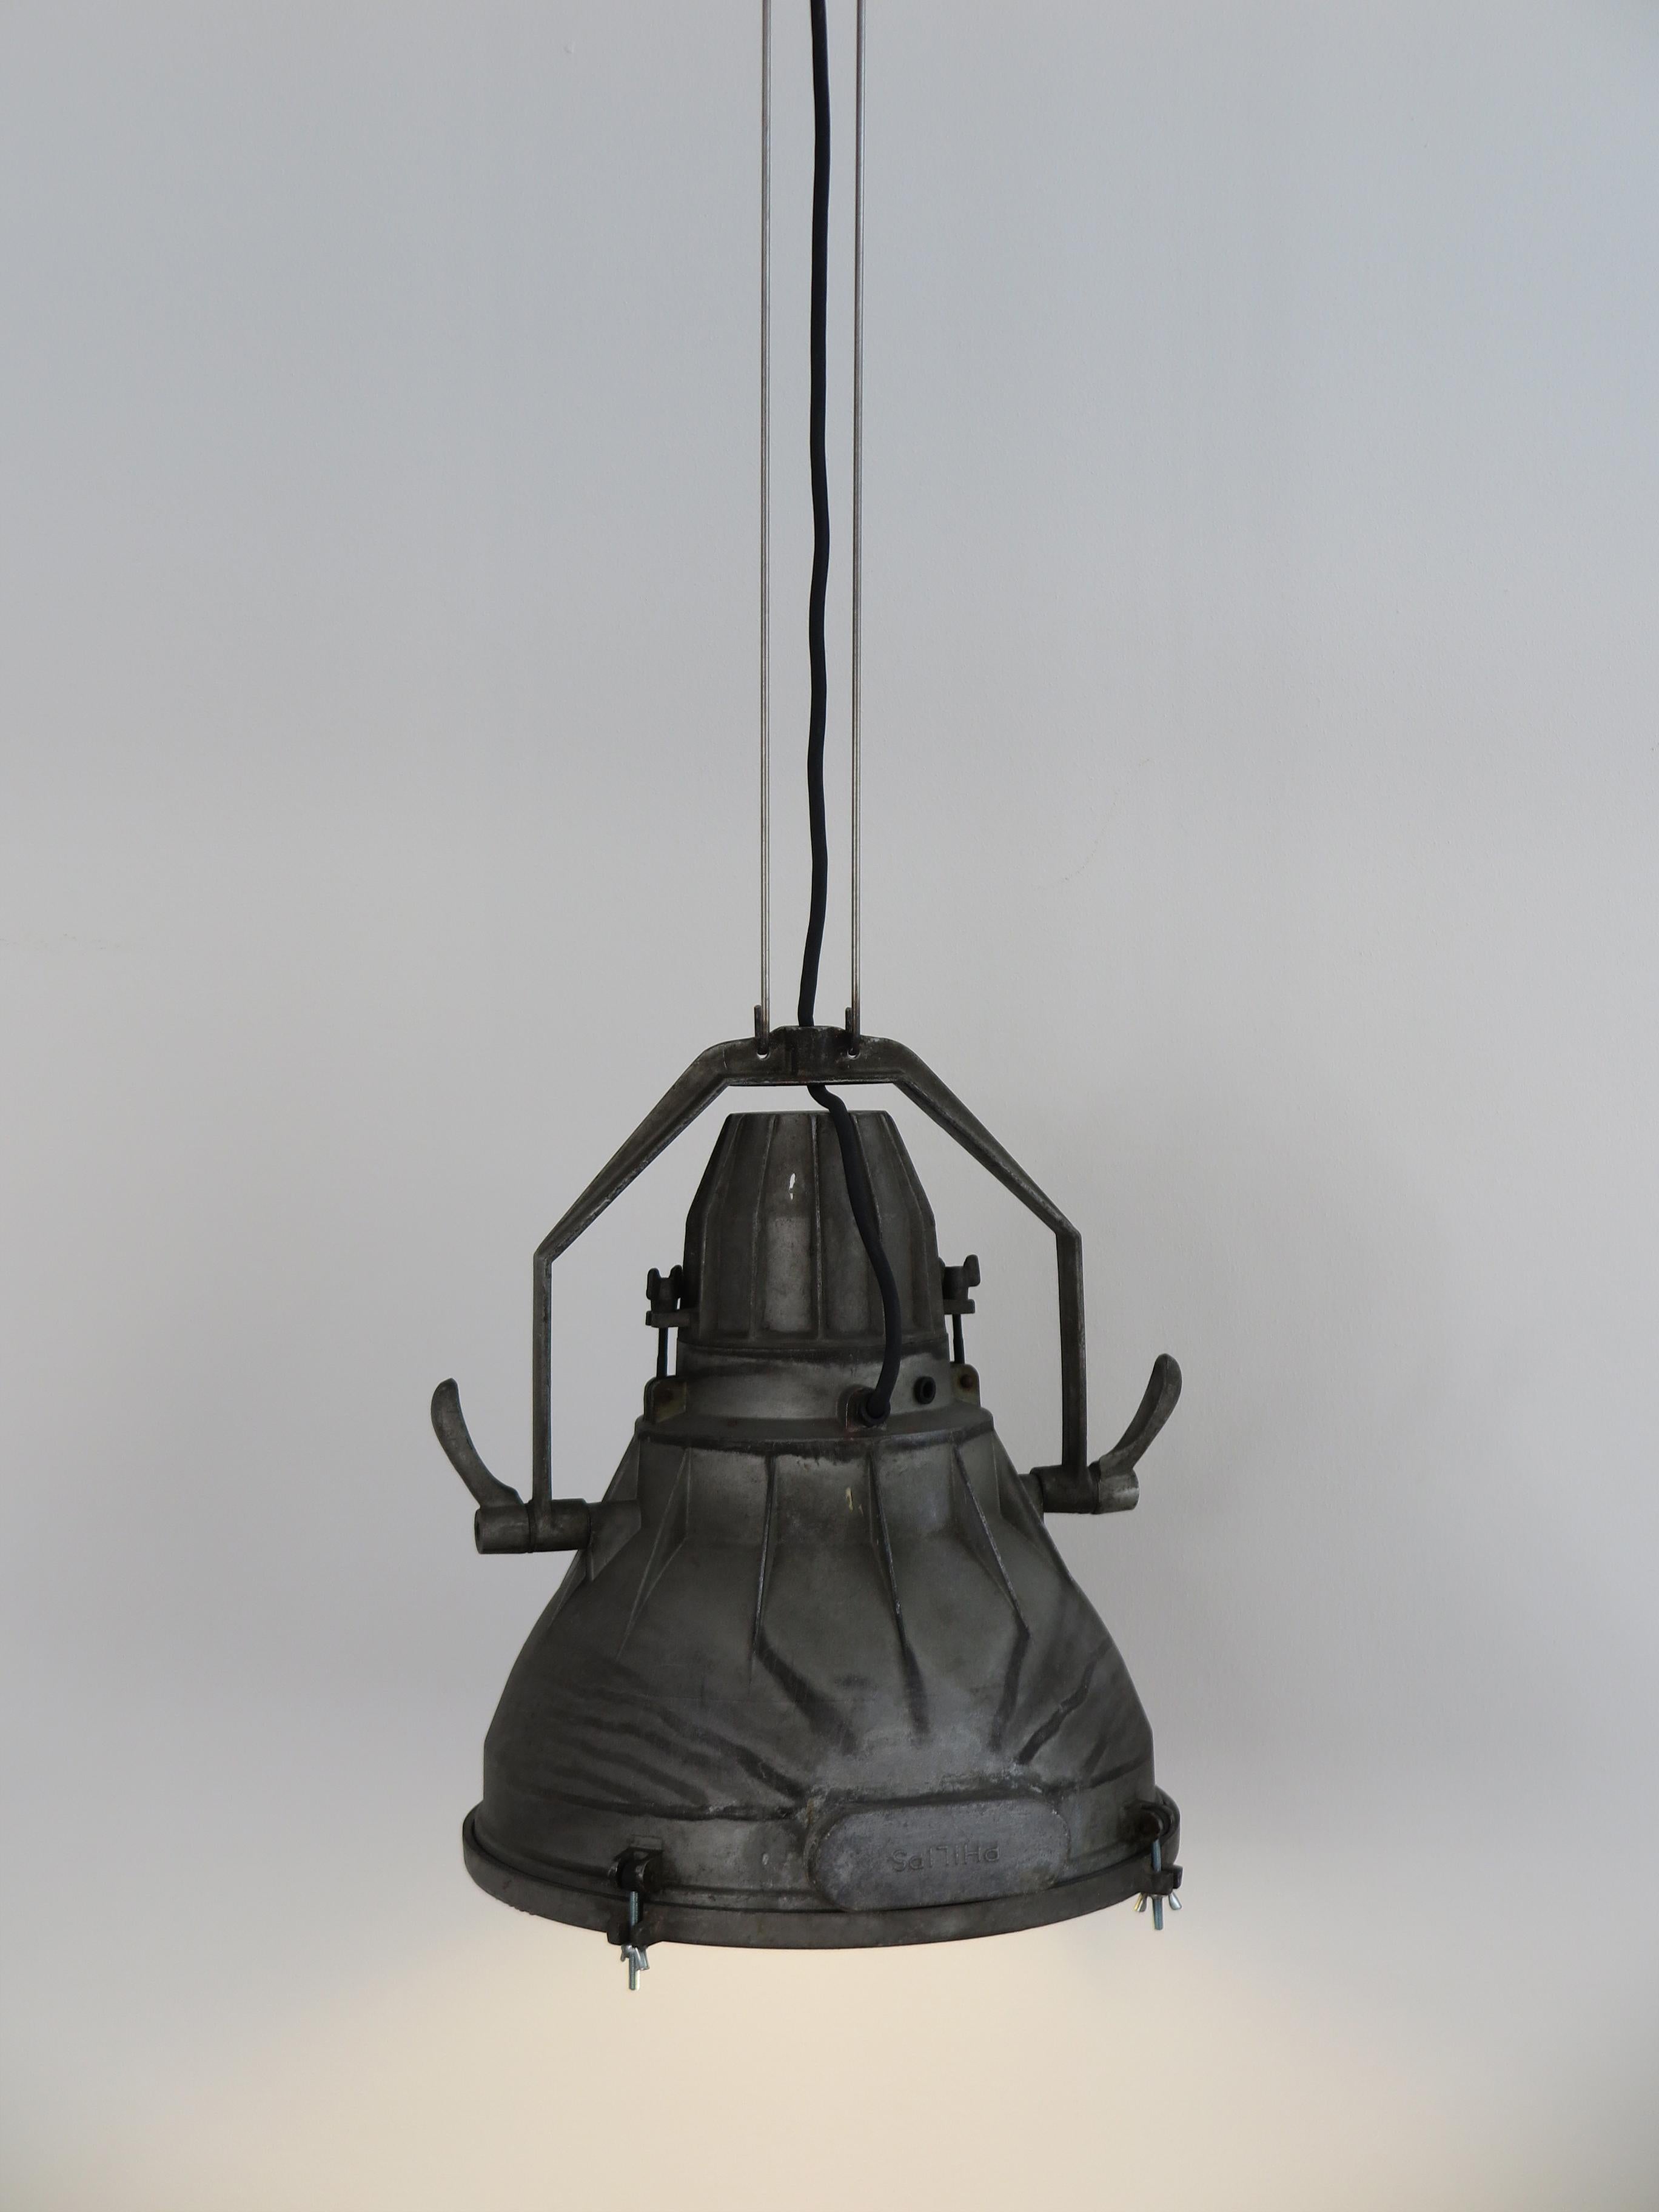 Grande lampada industriale a sospensione, vintage di modernariato, prodotta da Philips con struttura in metallo e diffusore in vetro con marchio Philips a rilievo in fusione nel metallo, Olanda anni 50

Si noti che la lampada è originale dell'epoca